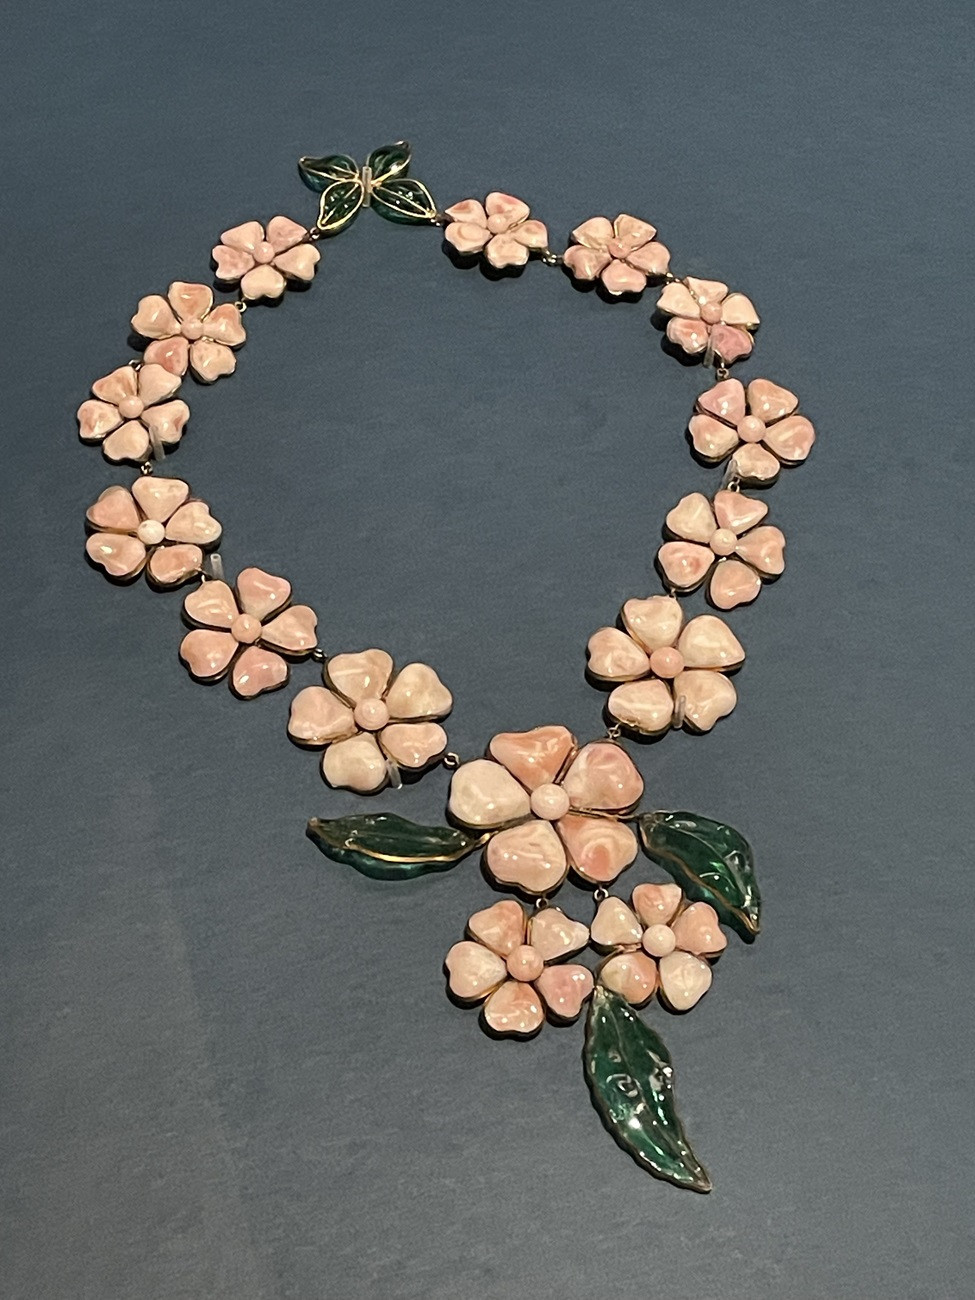 シャネル《ネックレス“花”モチーフ》（制作：メゾン・グリポワ）1938年 細いワイヤーフレームにガラスを流し込んでつくられた花びら。繊細な作品もシャネルの一面と、展覧会監修者でコスチュームジュエリー研究家の小瀧千佐子さんは教えてくれました。